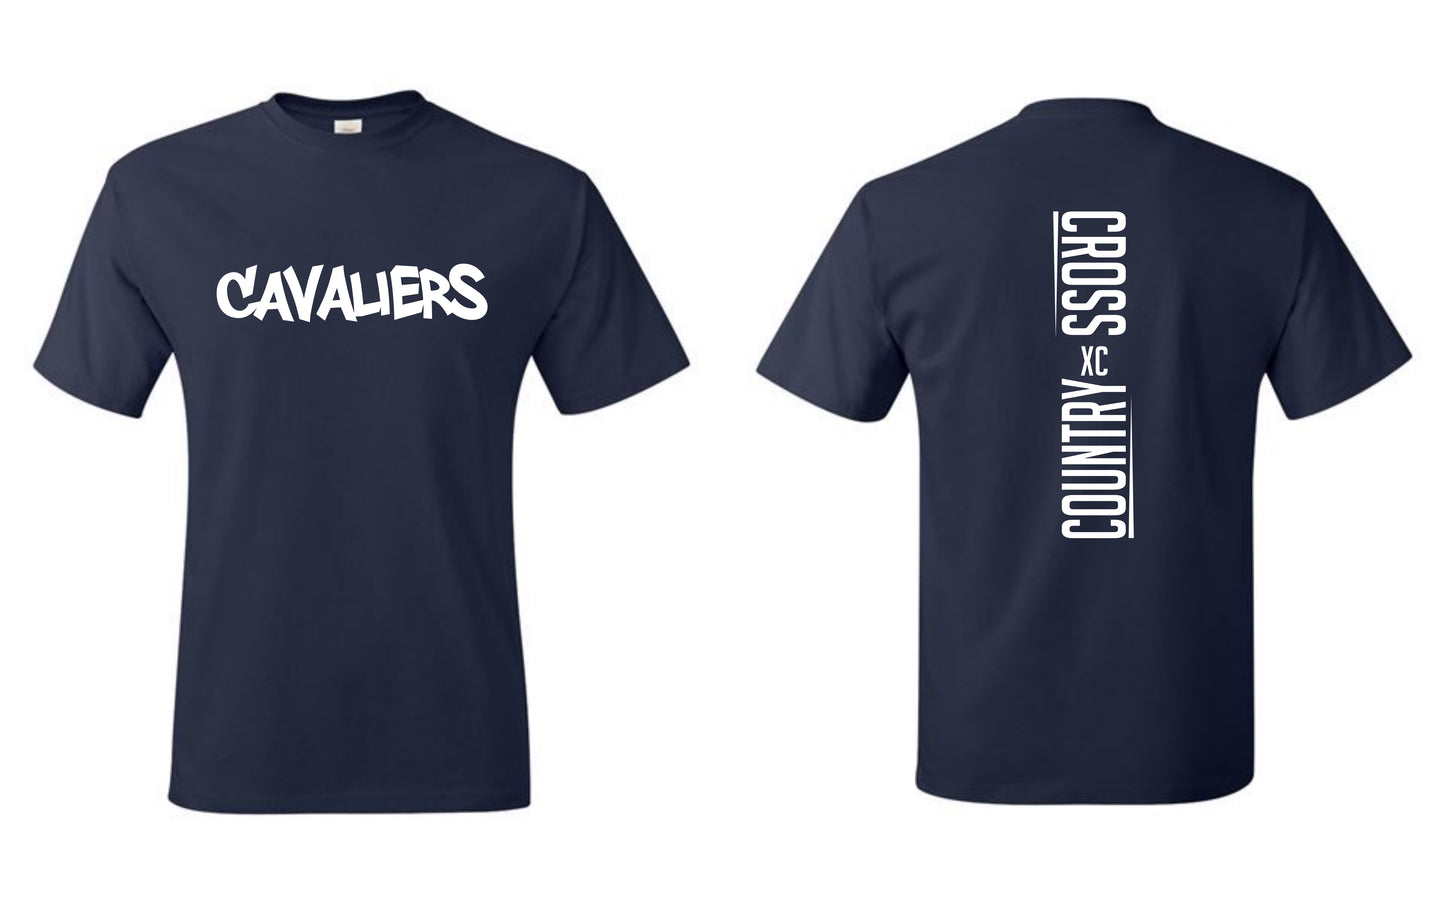 Cavaliers XC Tshirt